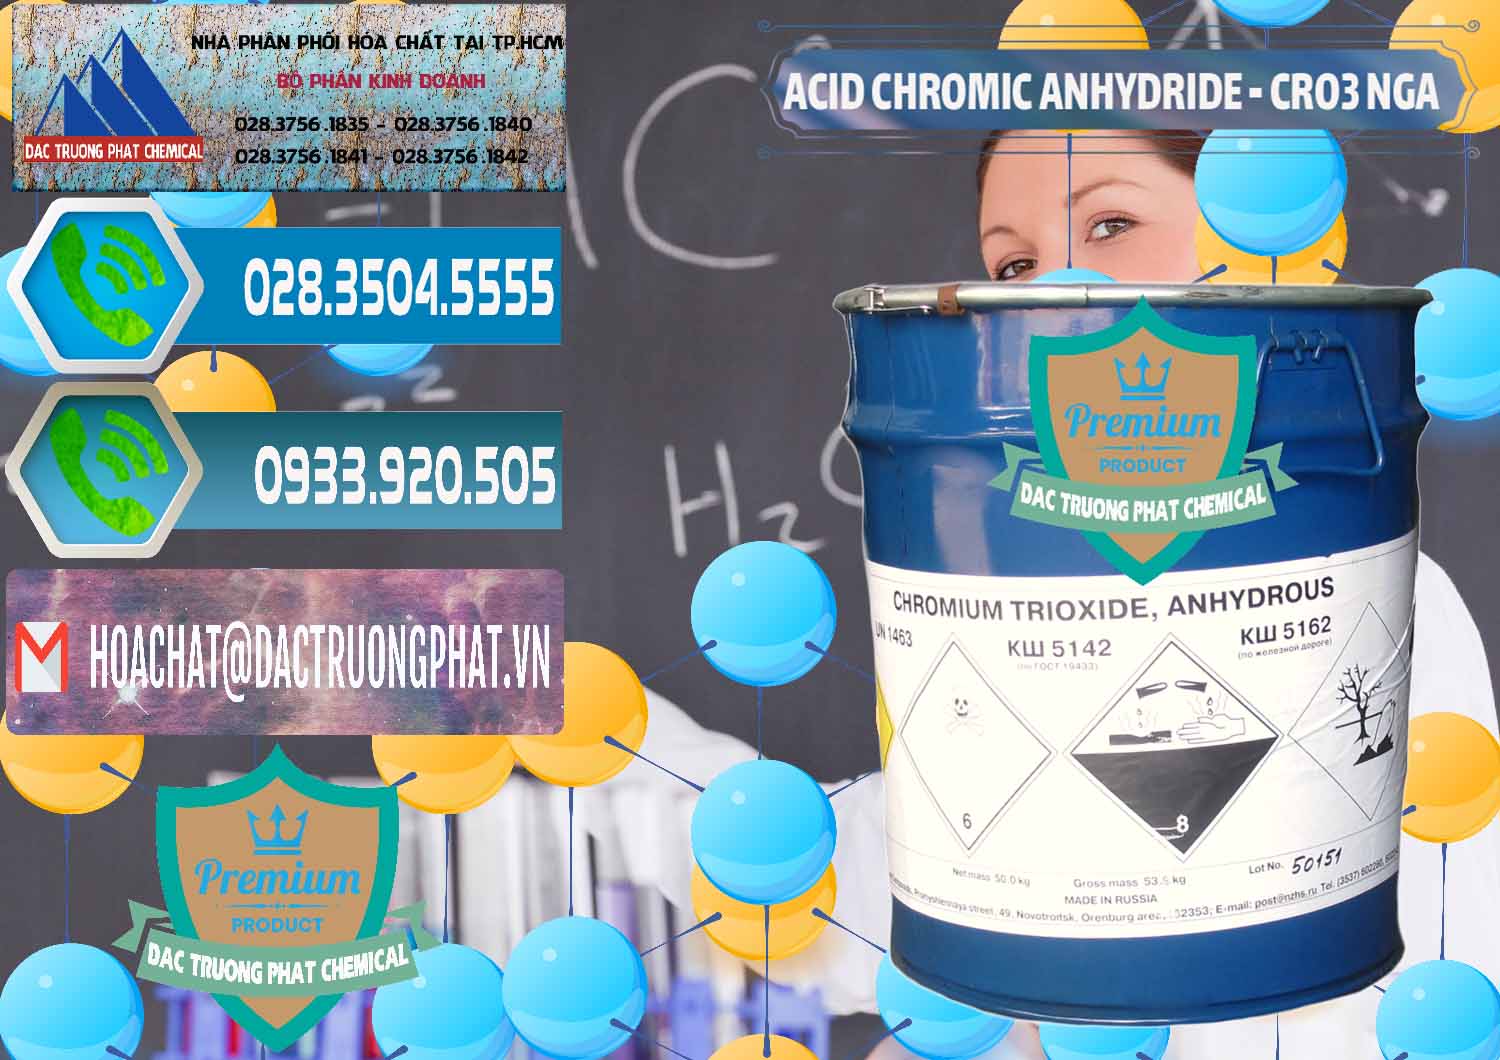 Nơi chuyên kinh doanh ( bán ) Acid Chromic Anhydride - Cromic CRO3 Nga Russia - 0006 - Công ty chuyên nhập khẩu và phân phối hóa chất tại TP.HCM - congtyhoachat.net